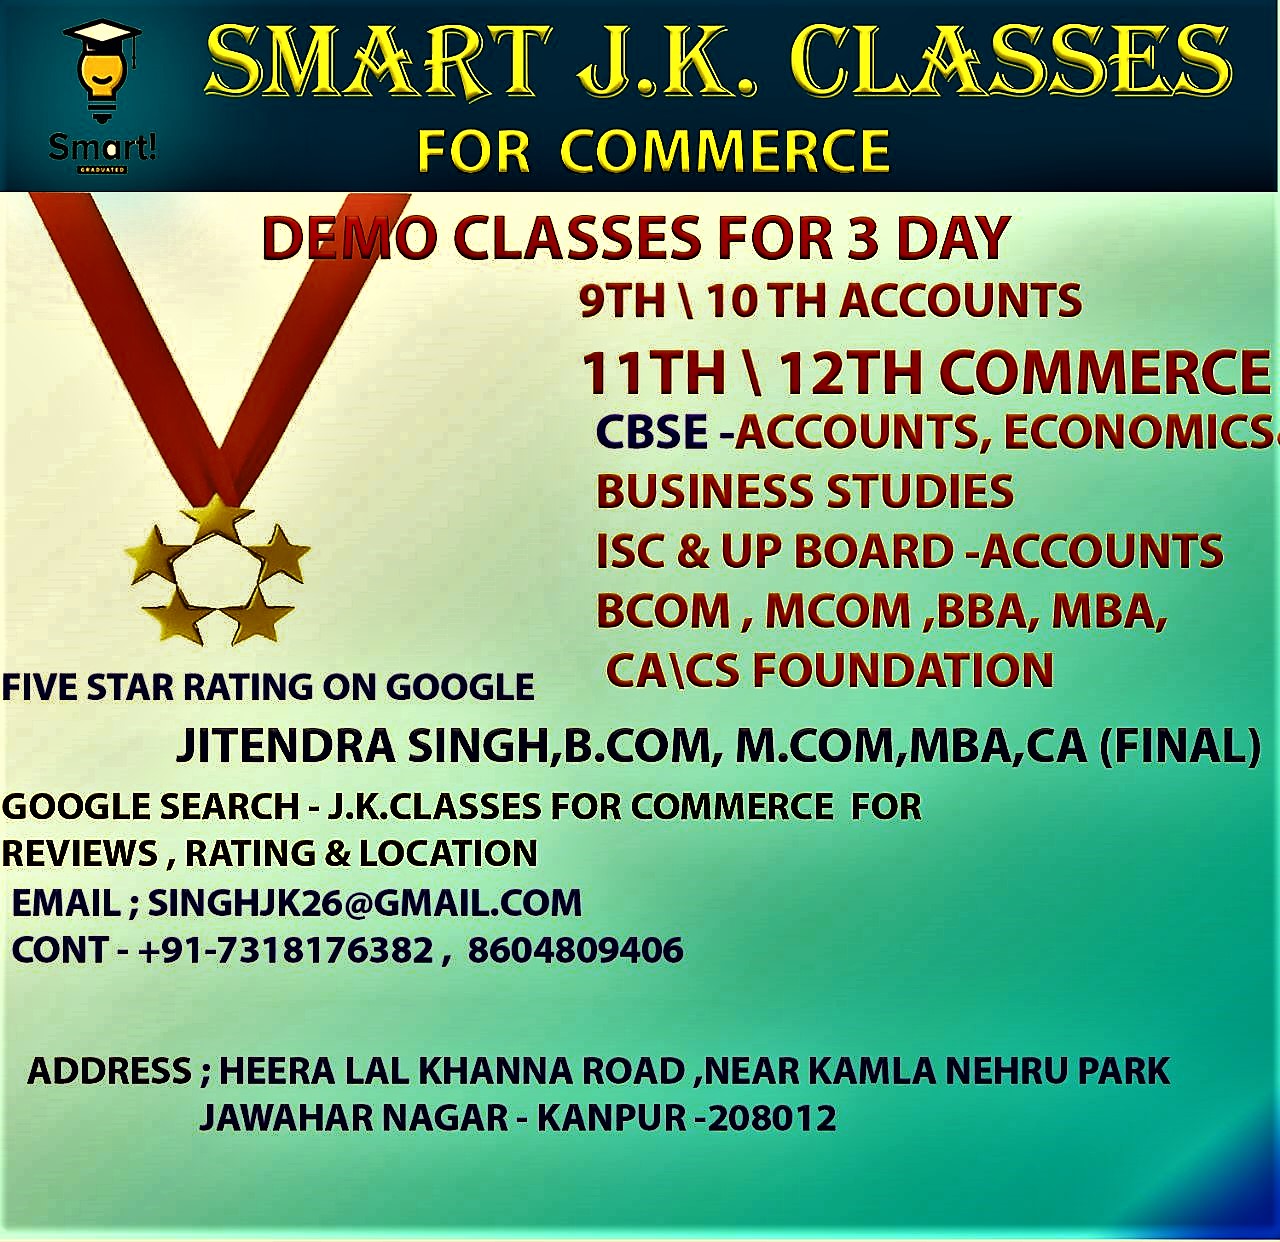 24097SMART J.K.CLASSES FOR COMMERCE
Accounts, Eco. BST
11th & 12th, B.Com, M.Com, BBA